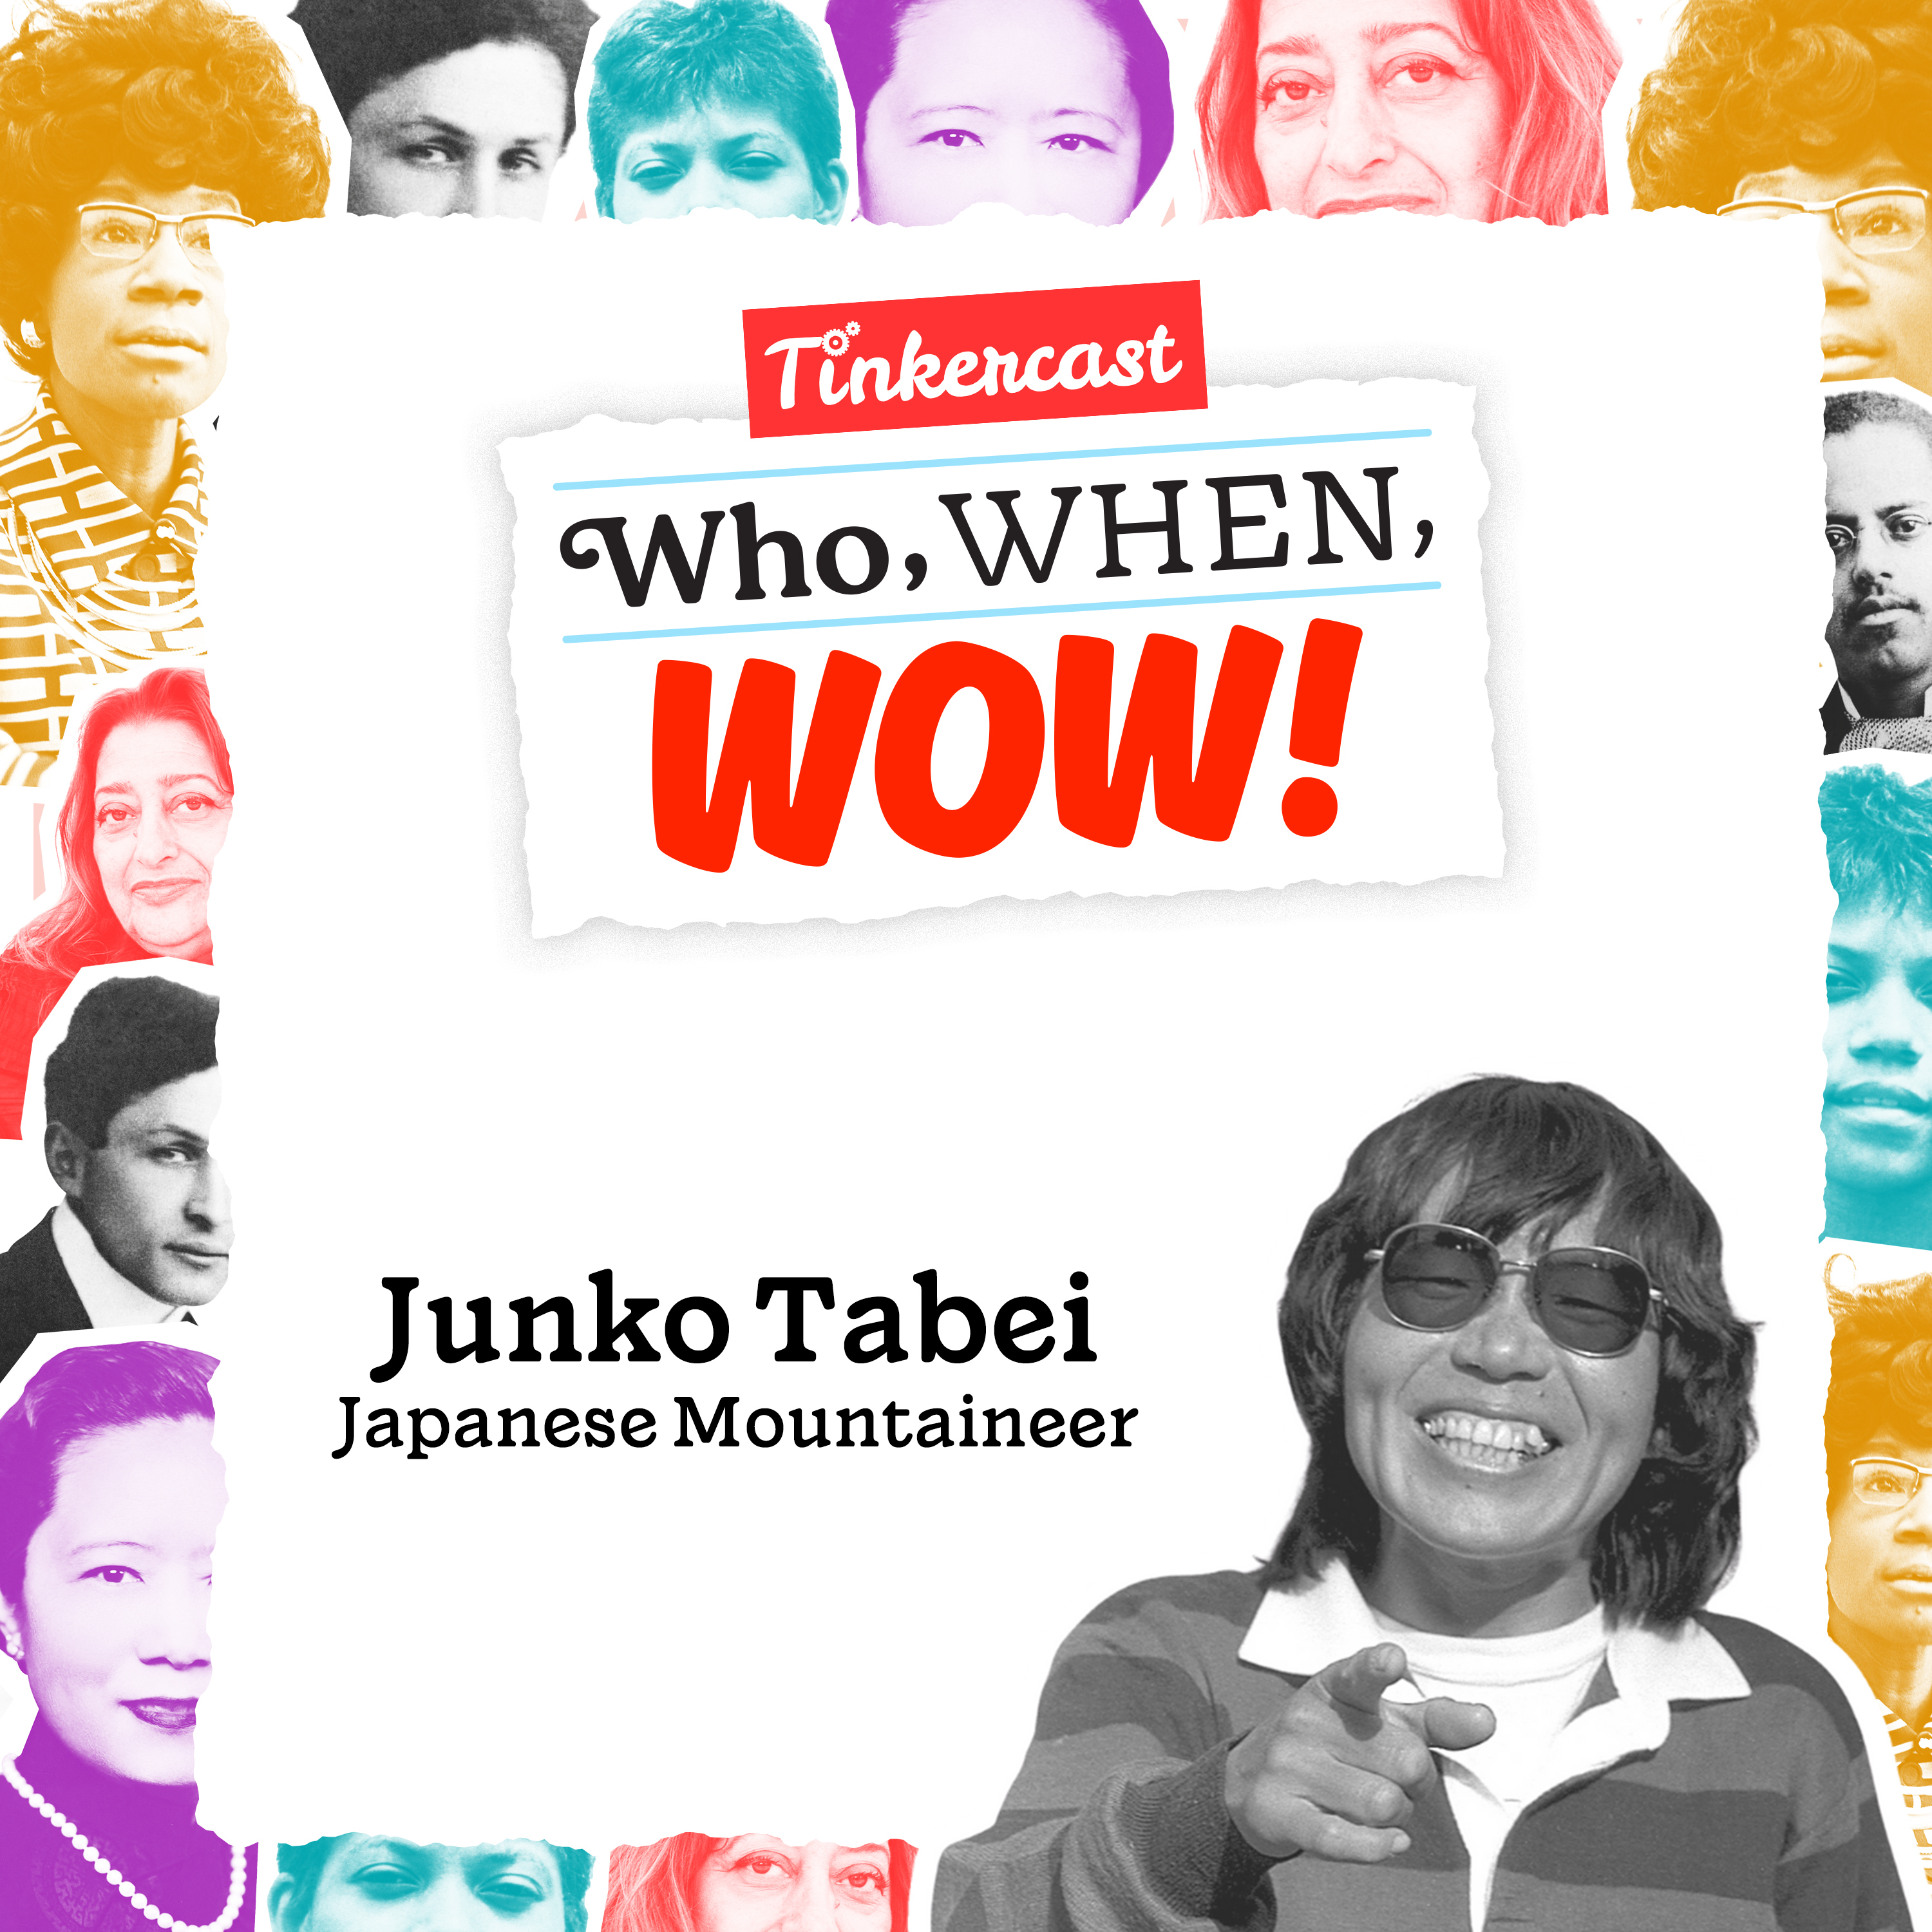 Junko Tabei: Mountaineer